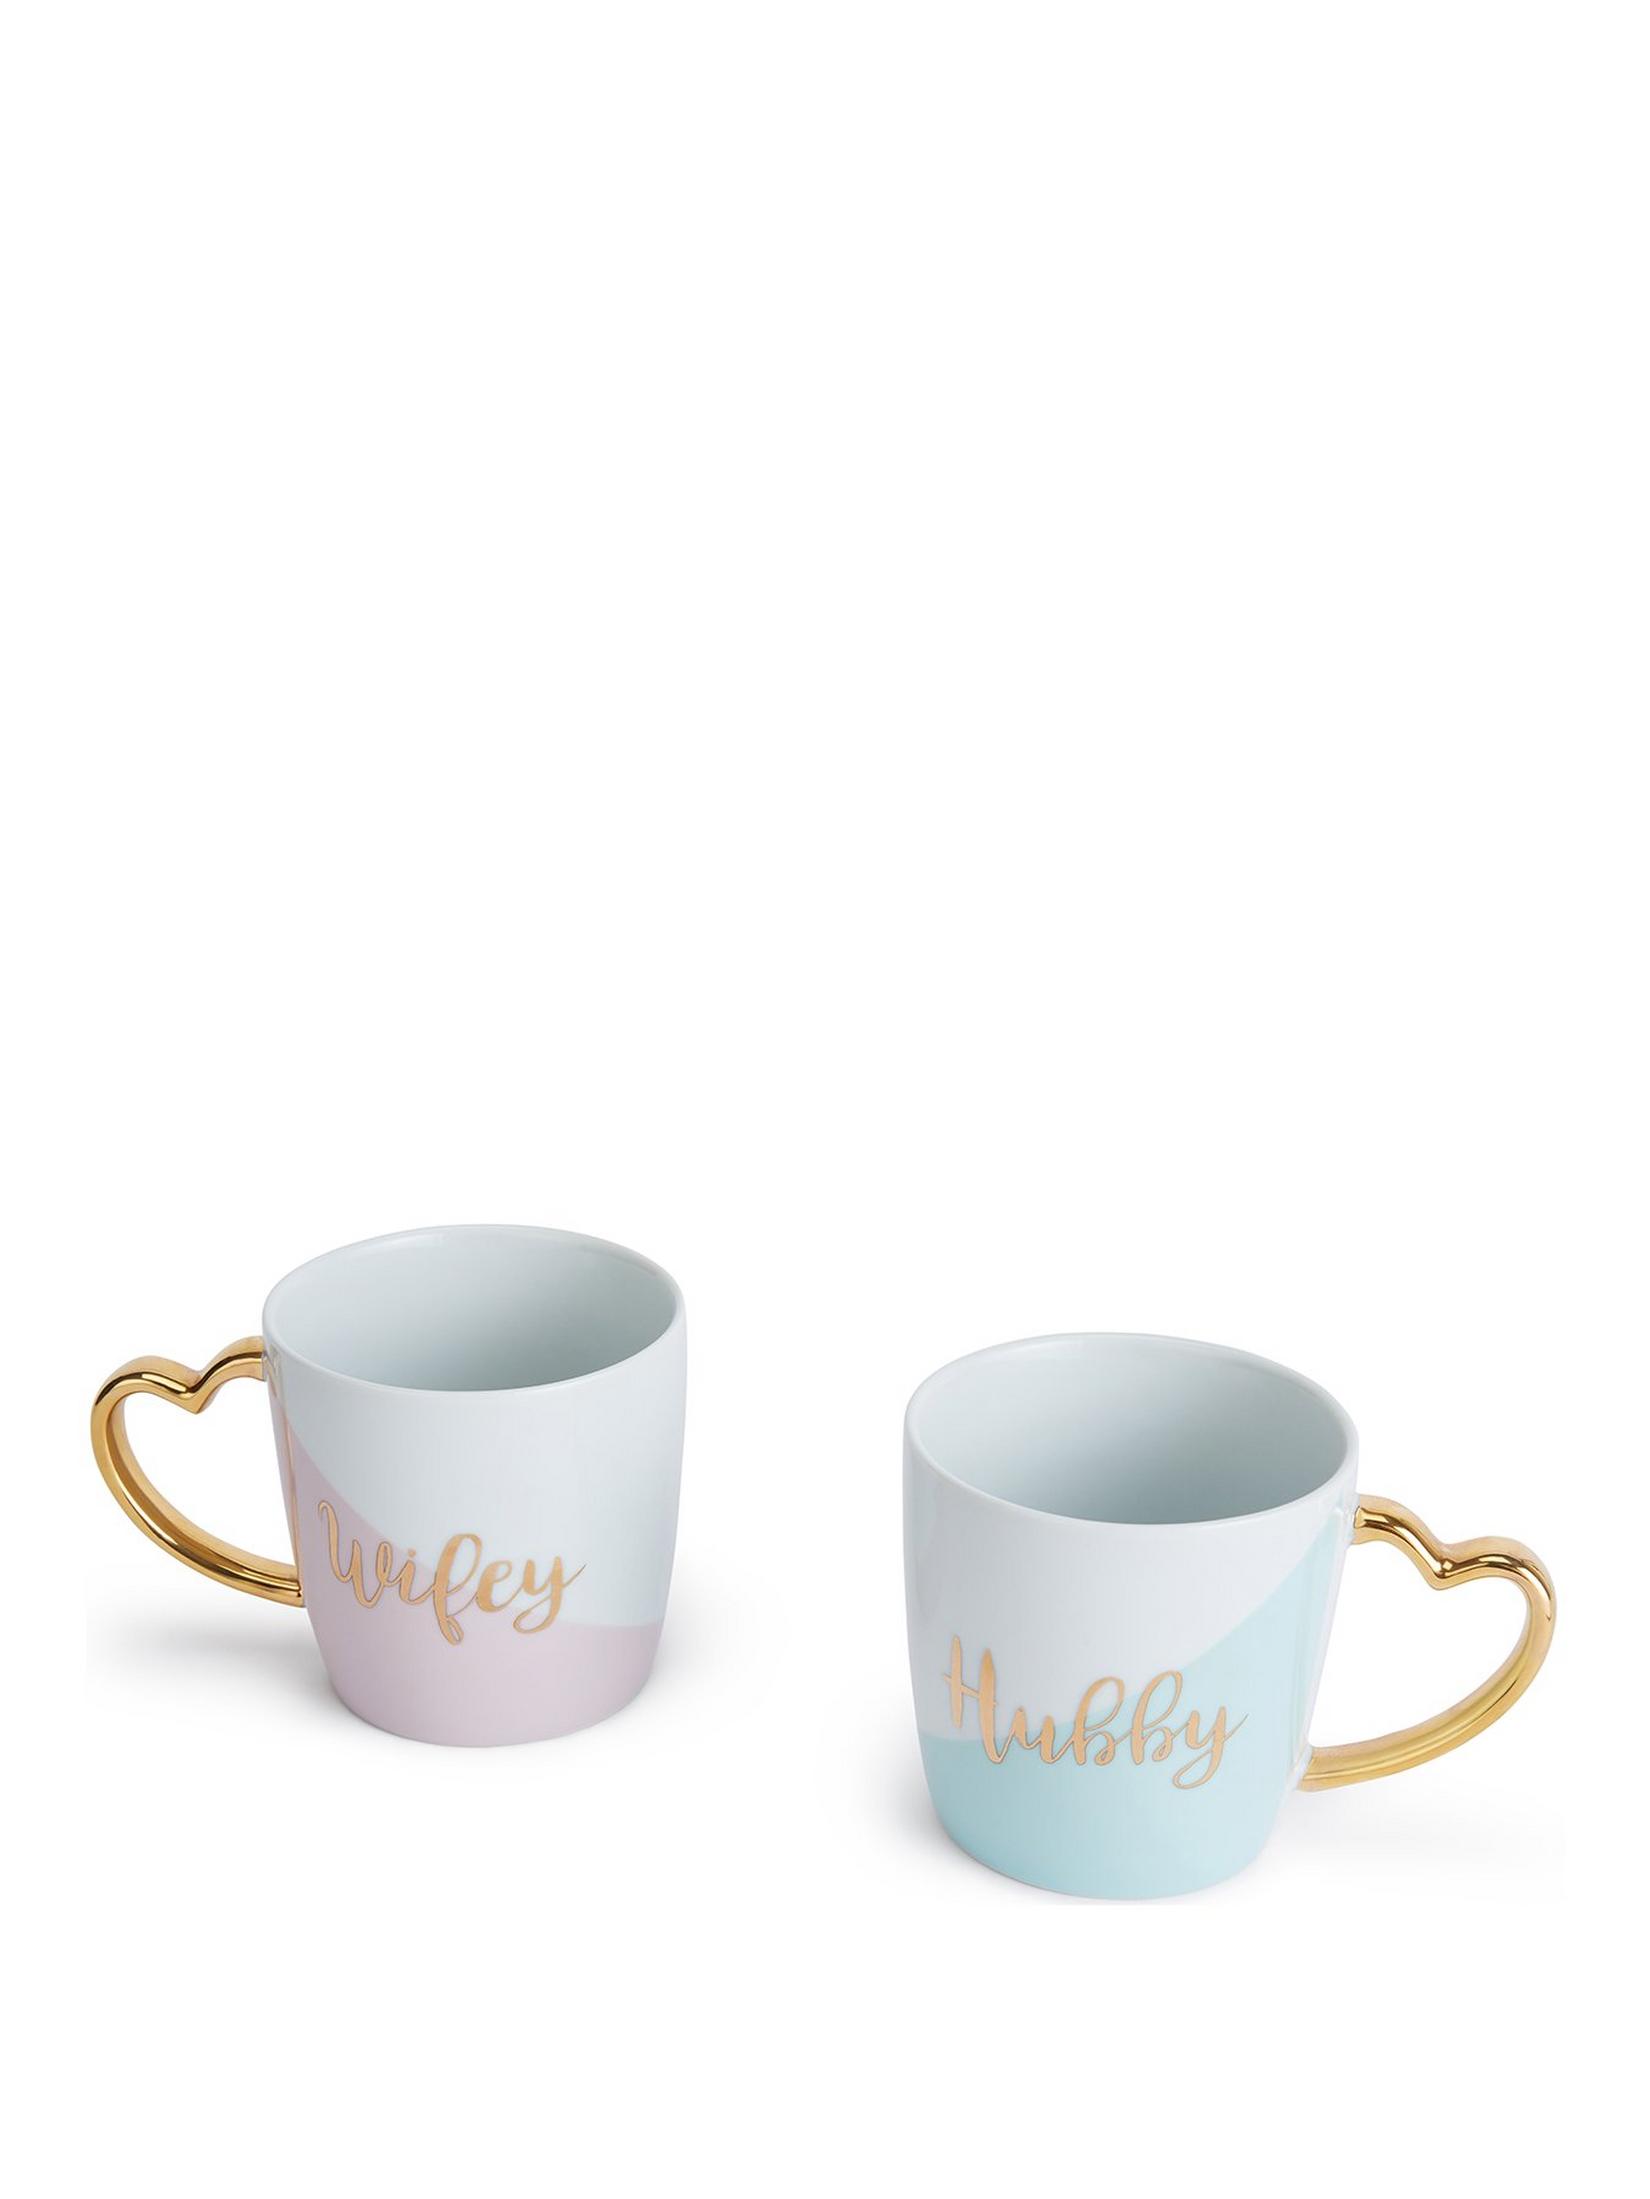 very.co.uk | Wifey And Hubby Mugs